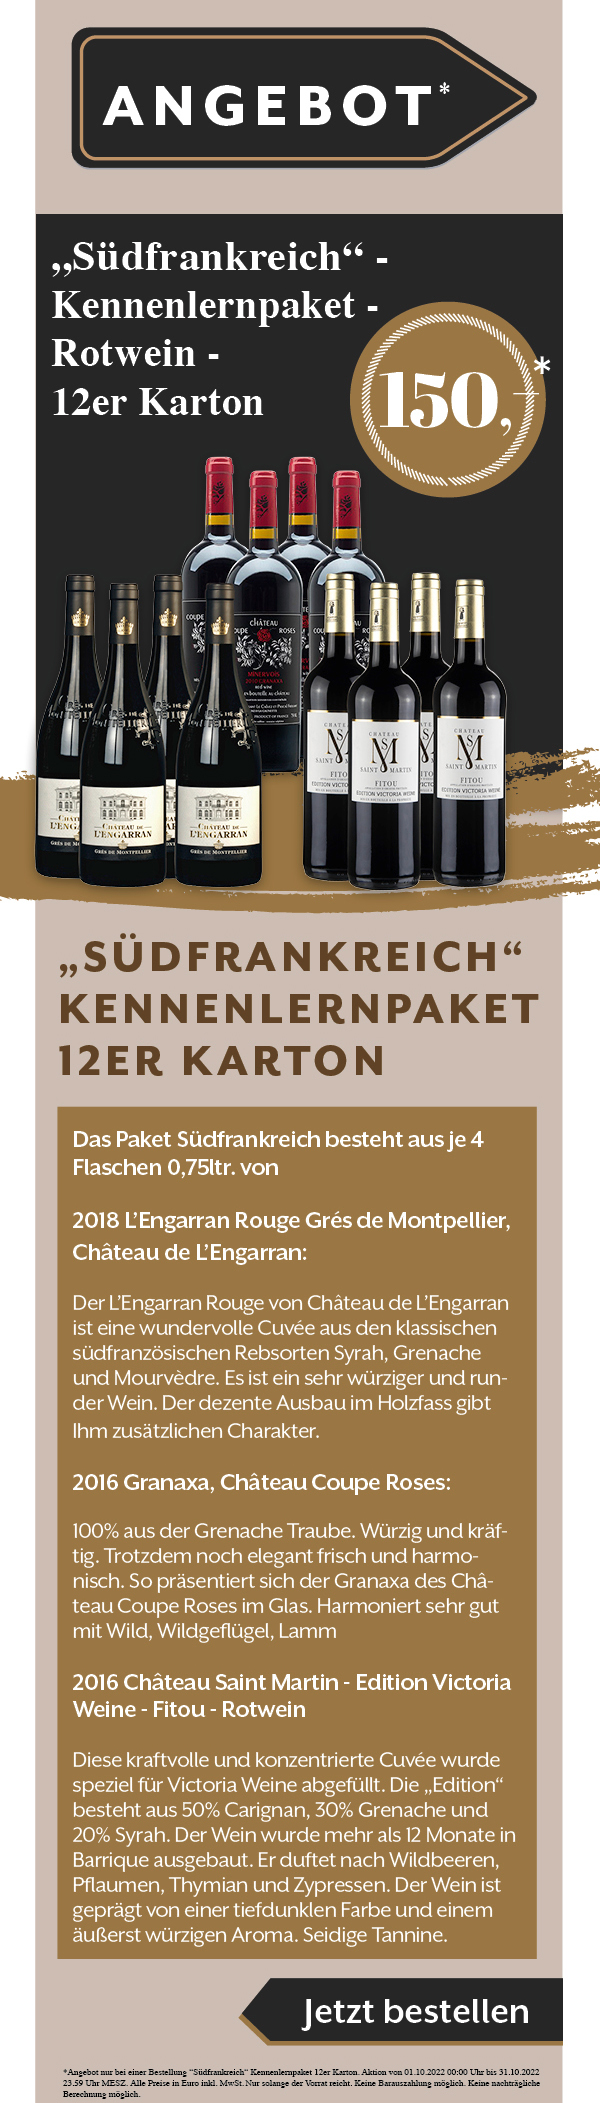 Wein Angebot Rabatt Weißwein Rotwein Rose Südfrankreich Gault Millau Weinguide Kennenlernpaket Probierpaket sparangebot